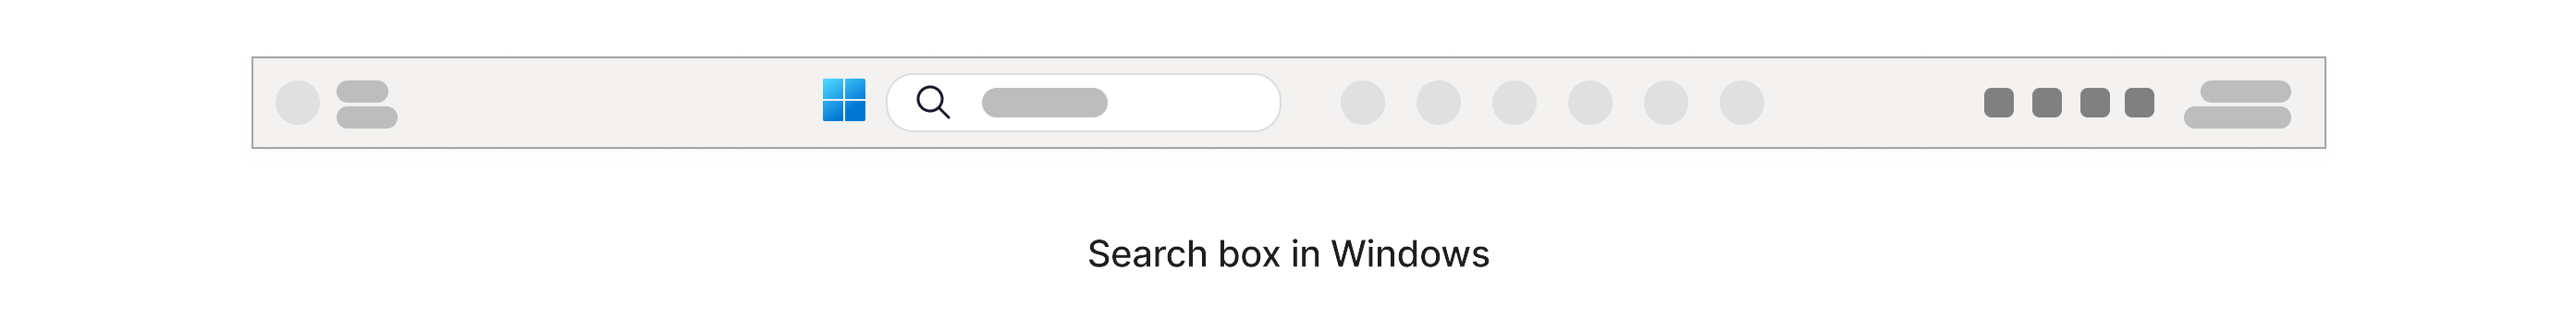 مربع البحث الذي يحتوي على أيقونة تكبير موجودة داخل شريط مهام Windows في أسفل الشاشة.